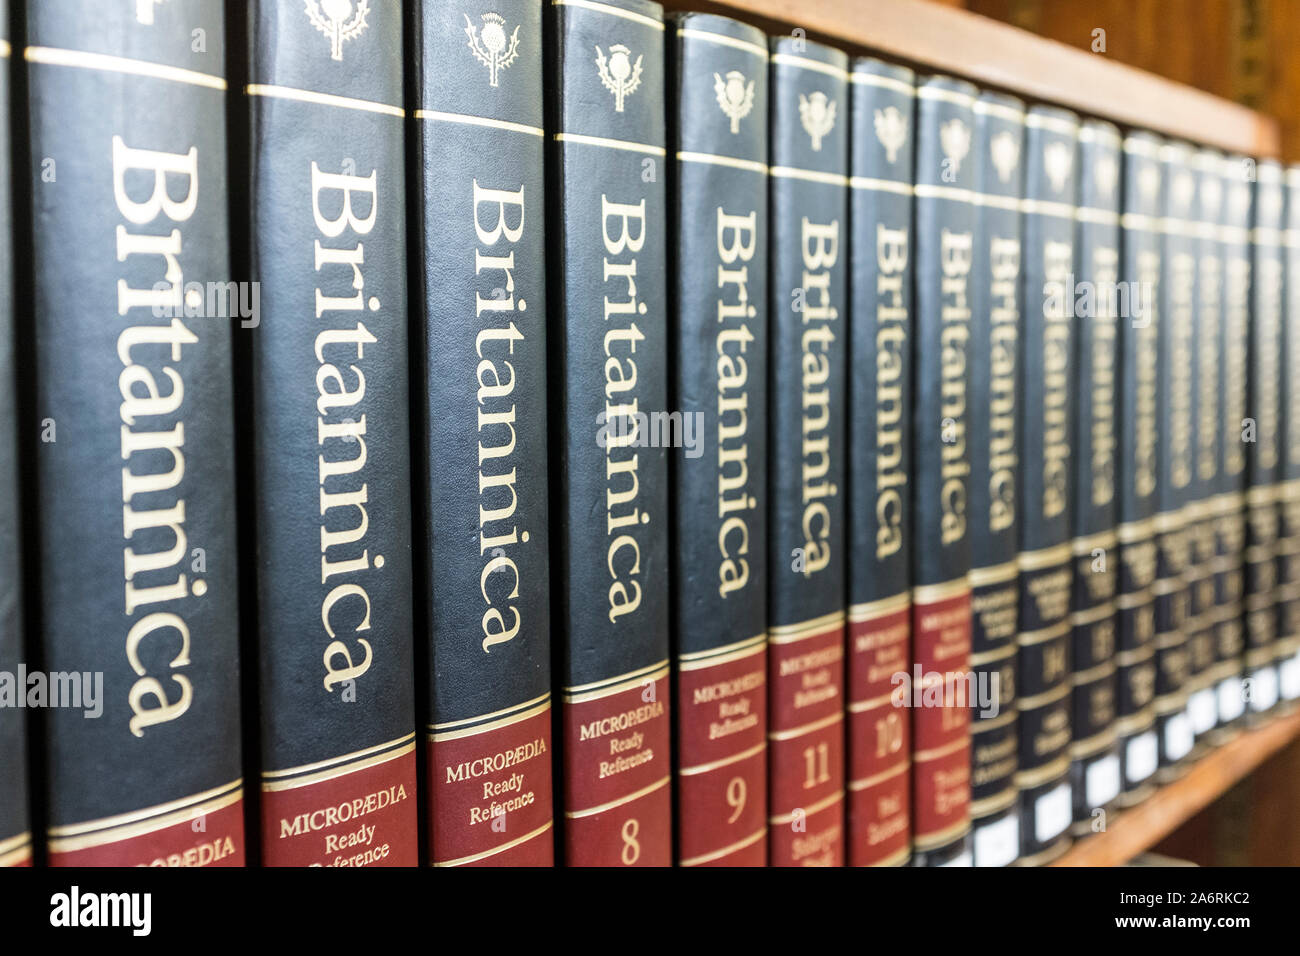 Britannica Micropedia volumes, Bristol Central Library, UK Stock Photo